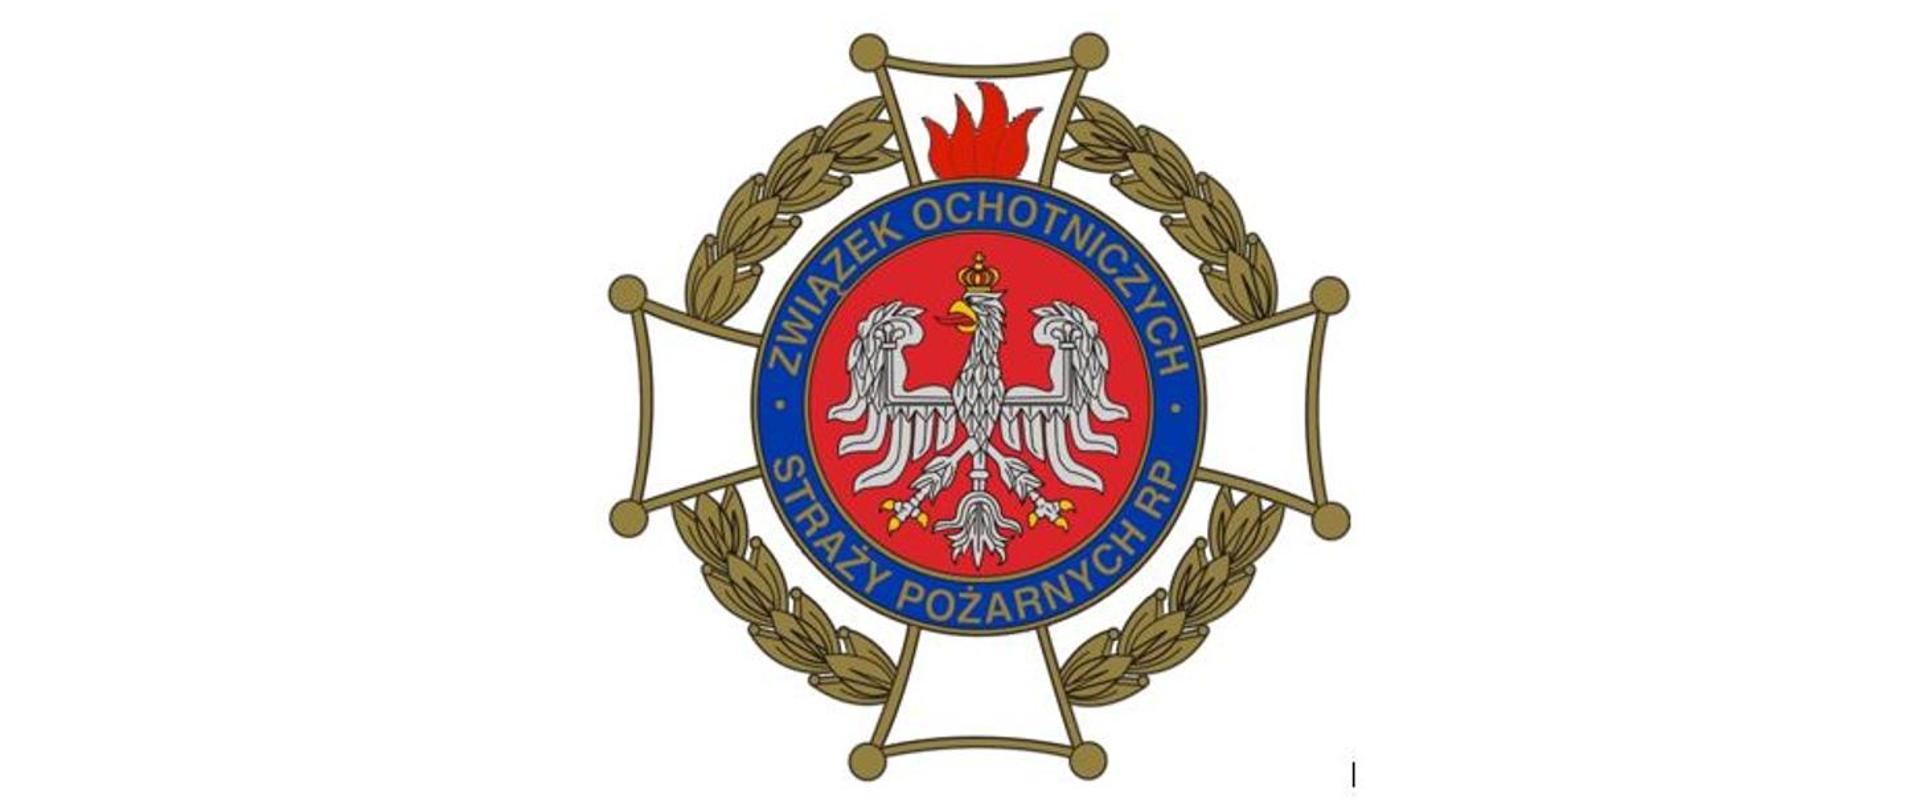 Obraz przedstawiający logo Ochotniczej Straży Pożarnych